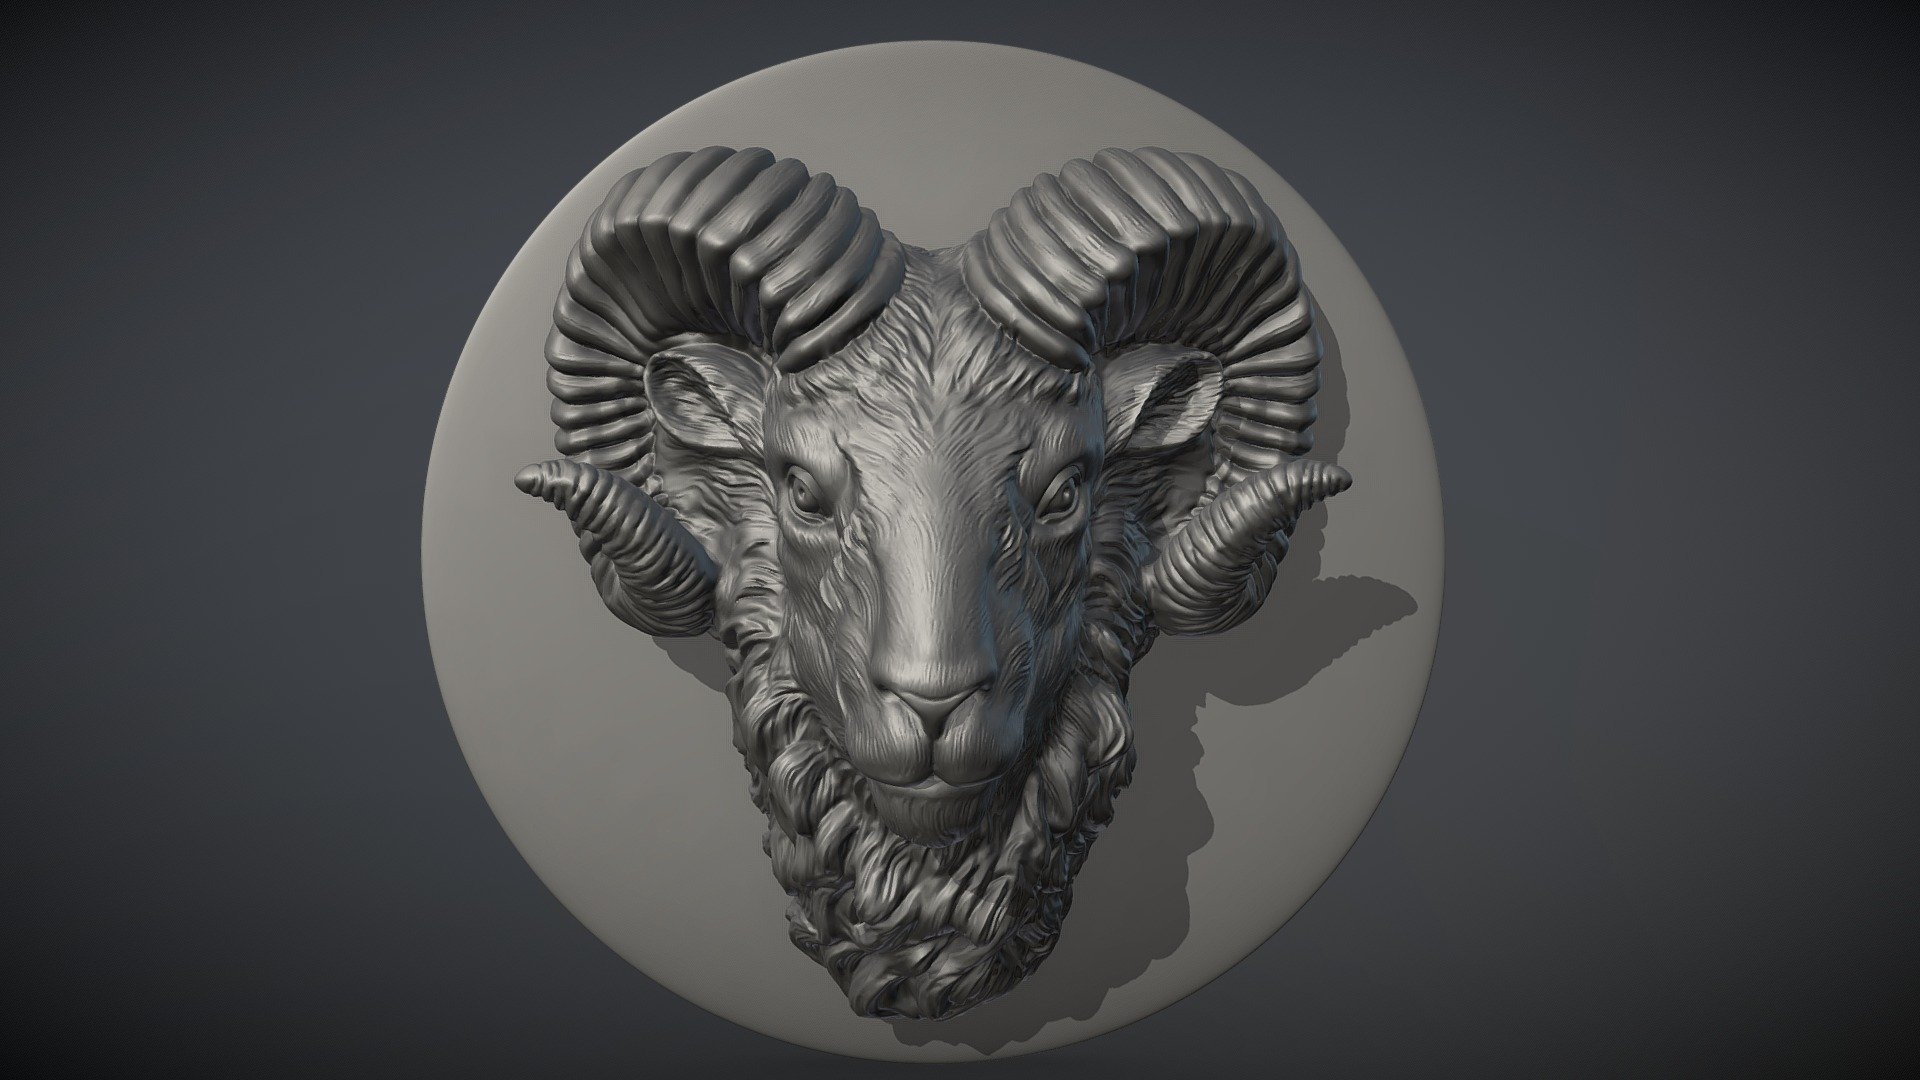 Printable 3D  model - Ram Head Medallion - 3D model by Old_nomad (@Viktor.Yakin) 3d model